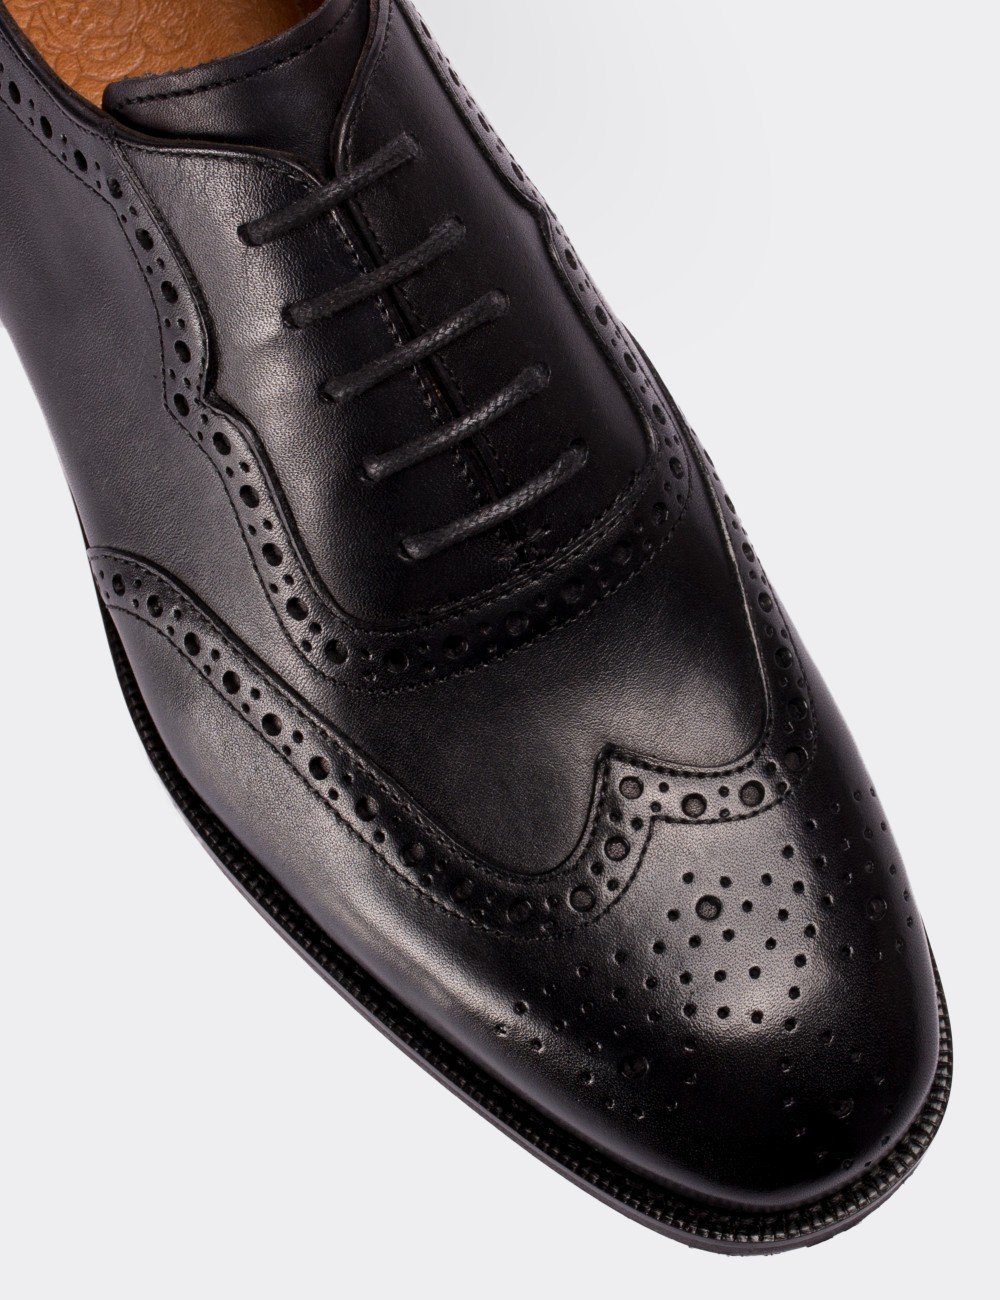 Hakiki Deri Siyah Klasik Erkek Ayakkabı - 01676MSYHM01